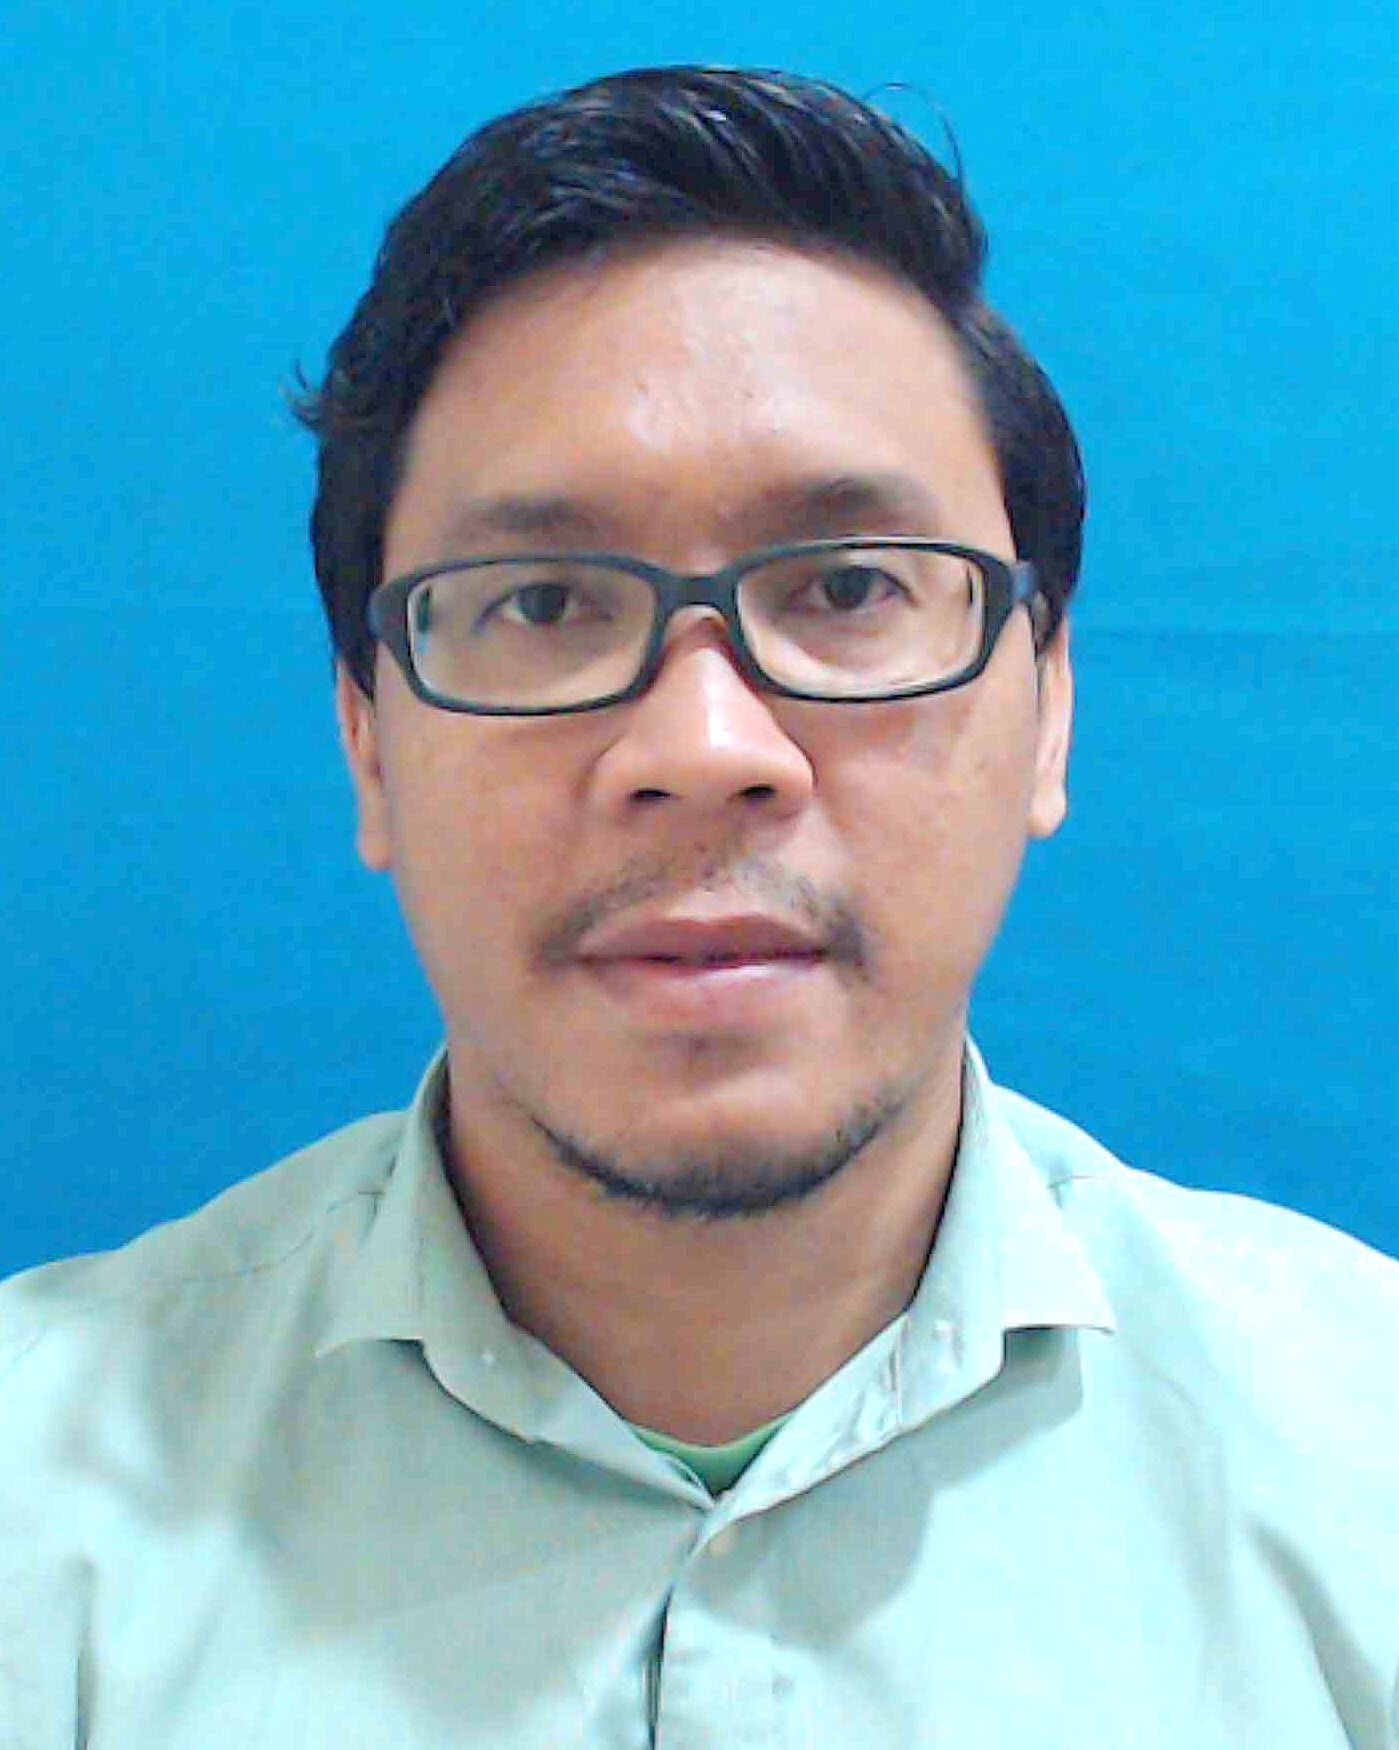 Ahmad Fadhil Bin Ismail